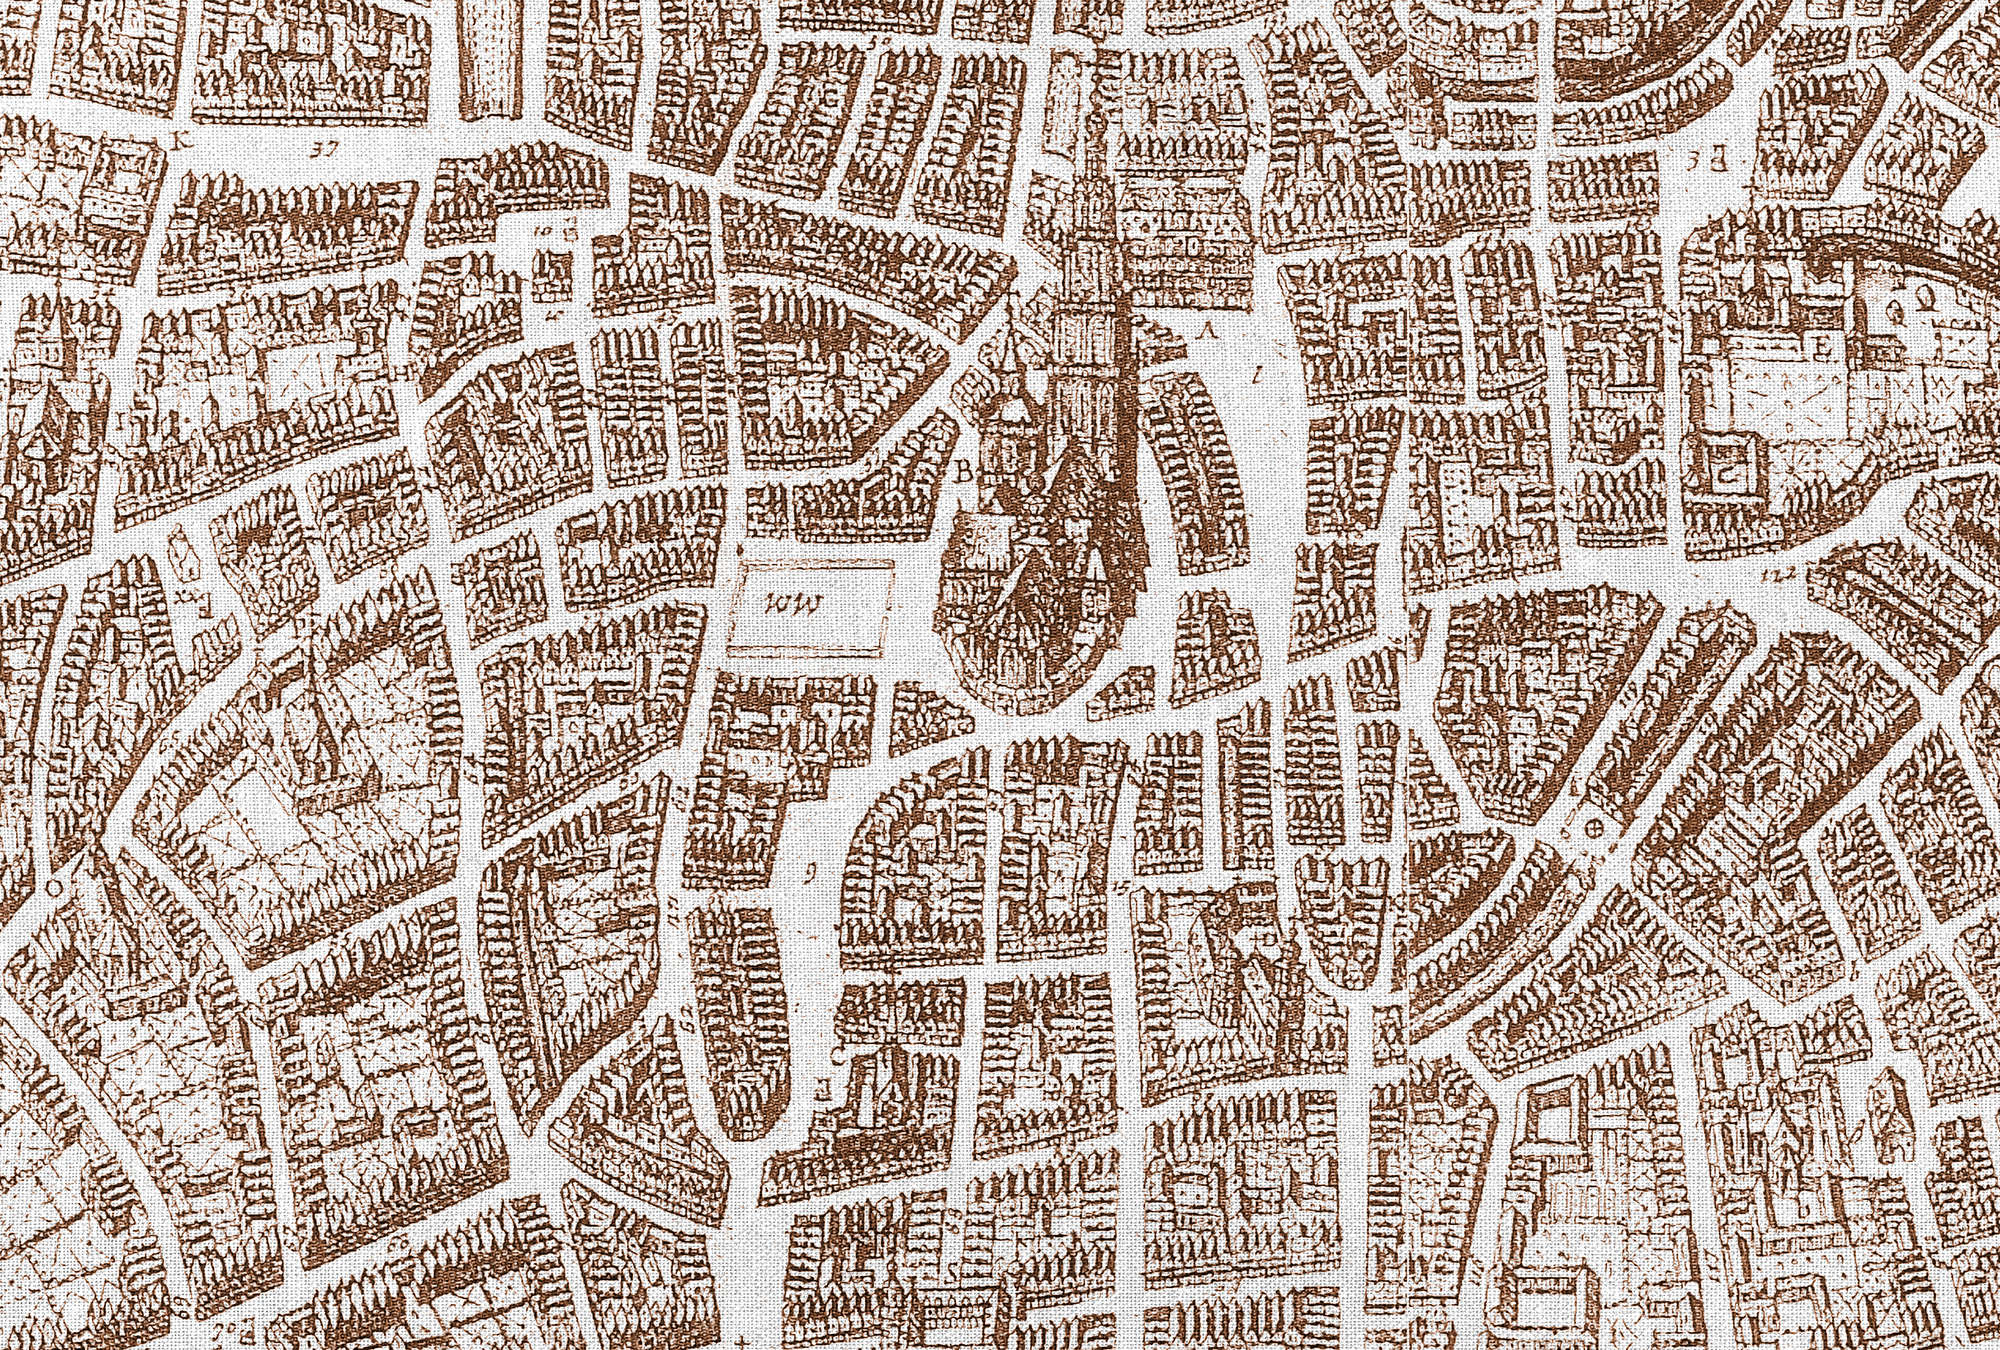             Papier peint Plan de ville look vintage - marron, blanc
        